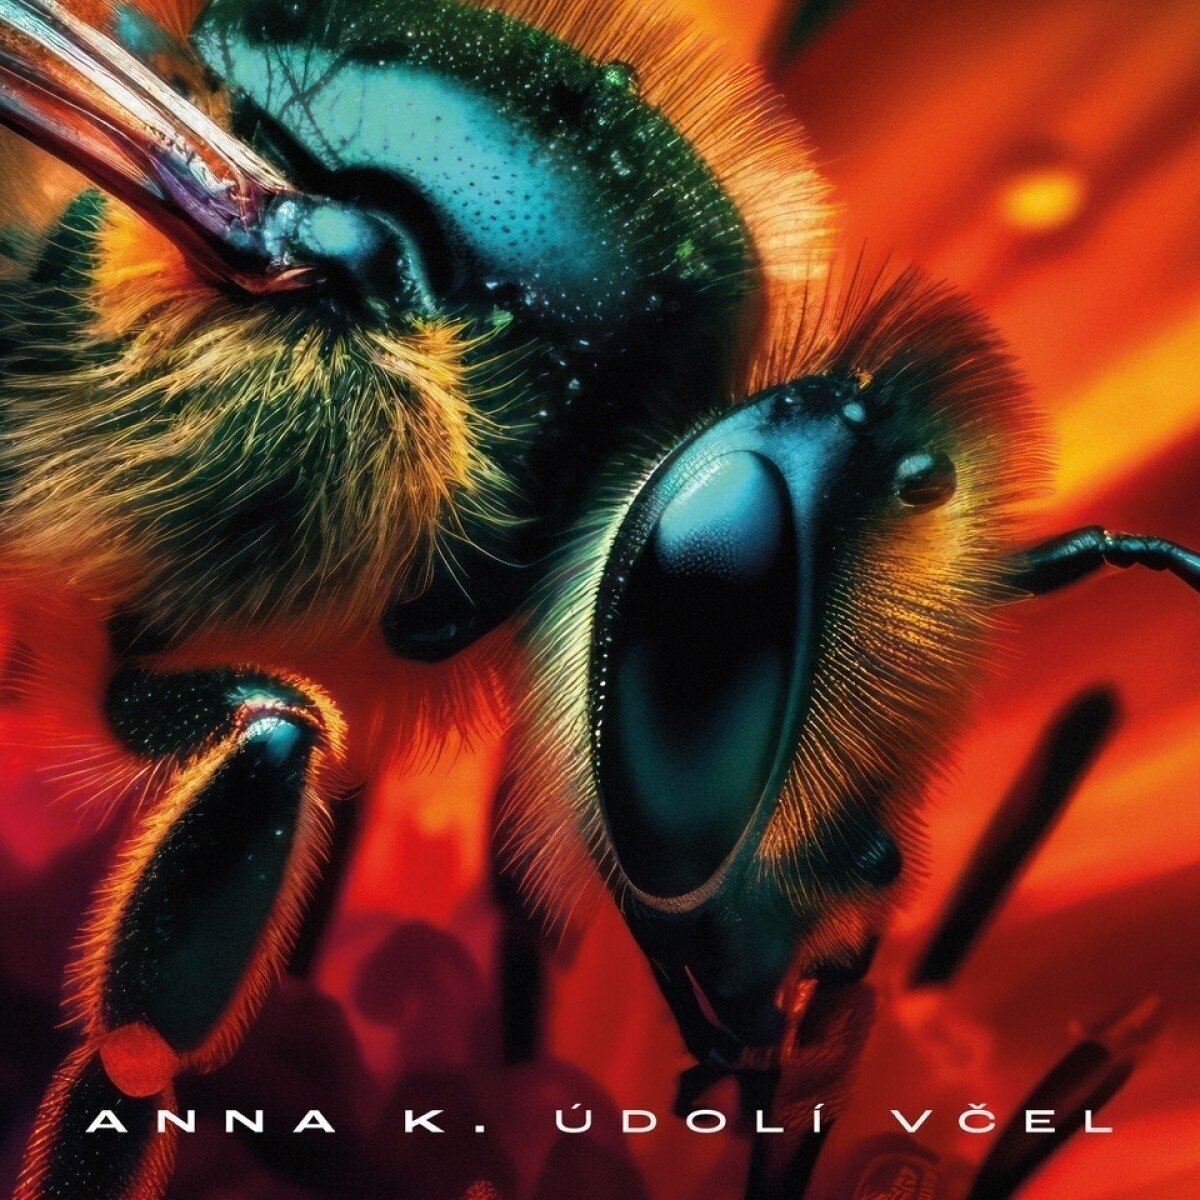 Anna K - Údolí včel (Limited Edition) (Blue Marbled Coloured) (LP) Anna K